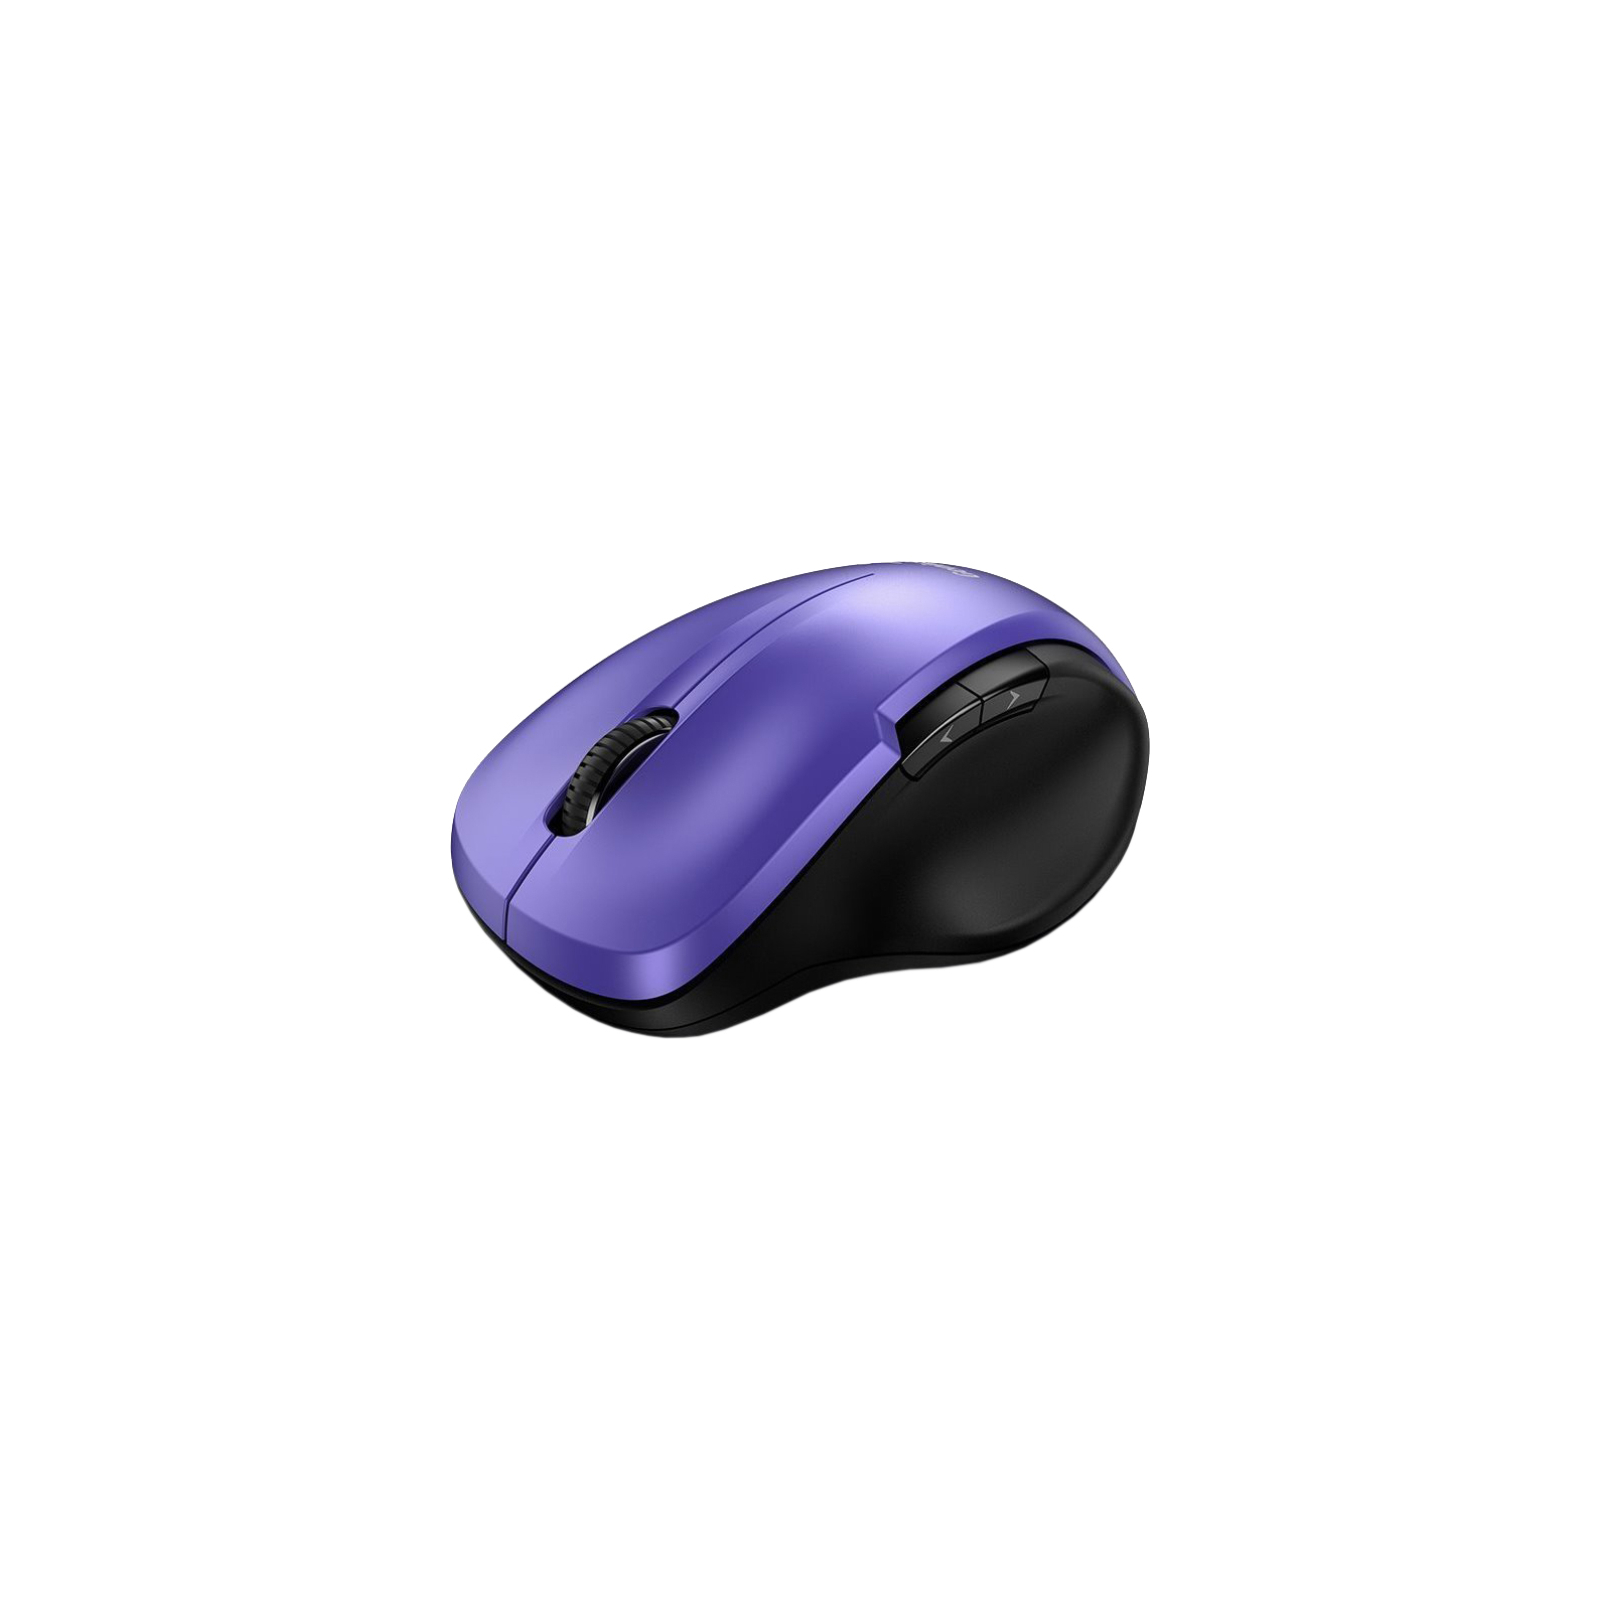 Мишка Genius Ergo 8200S Wireless Purple (31030029402)